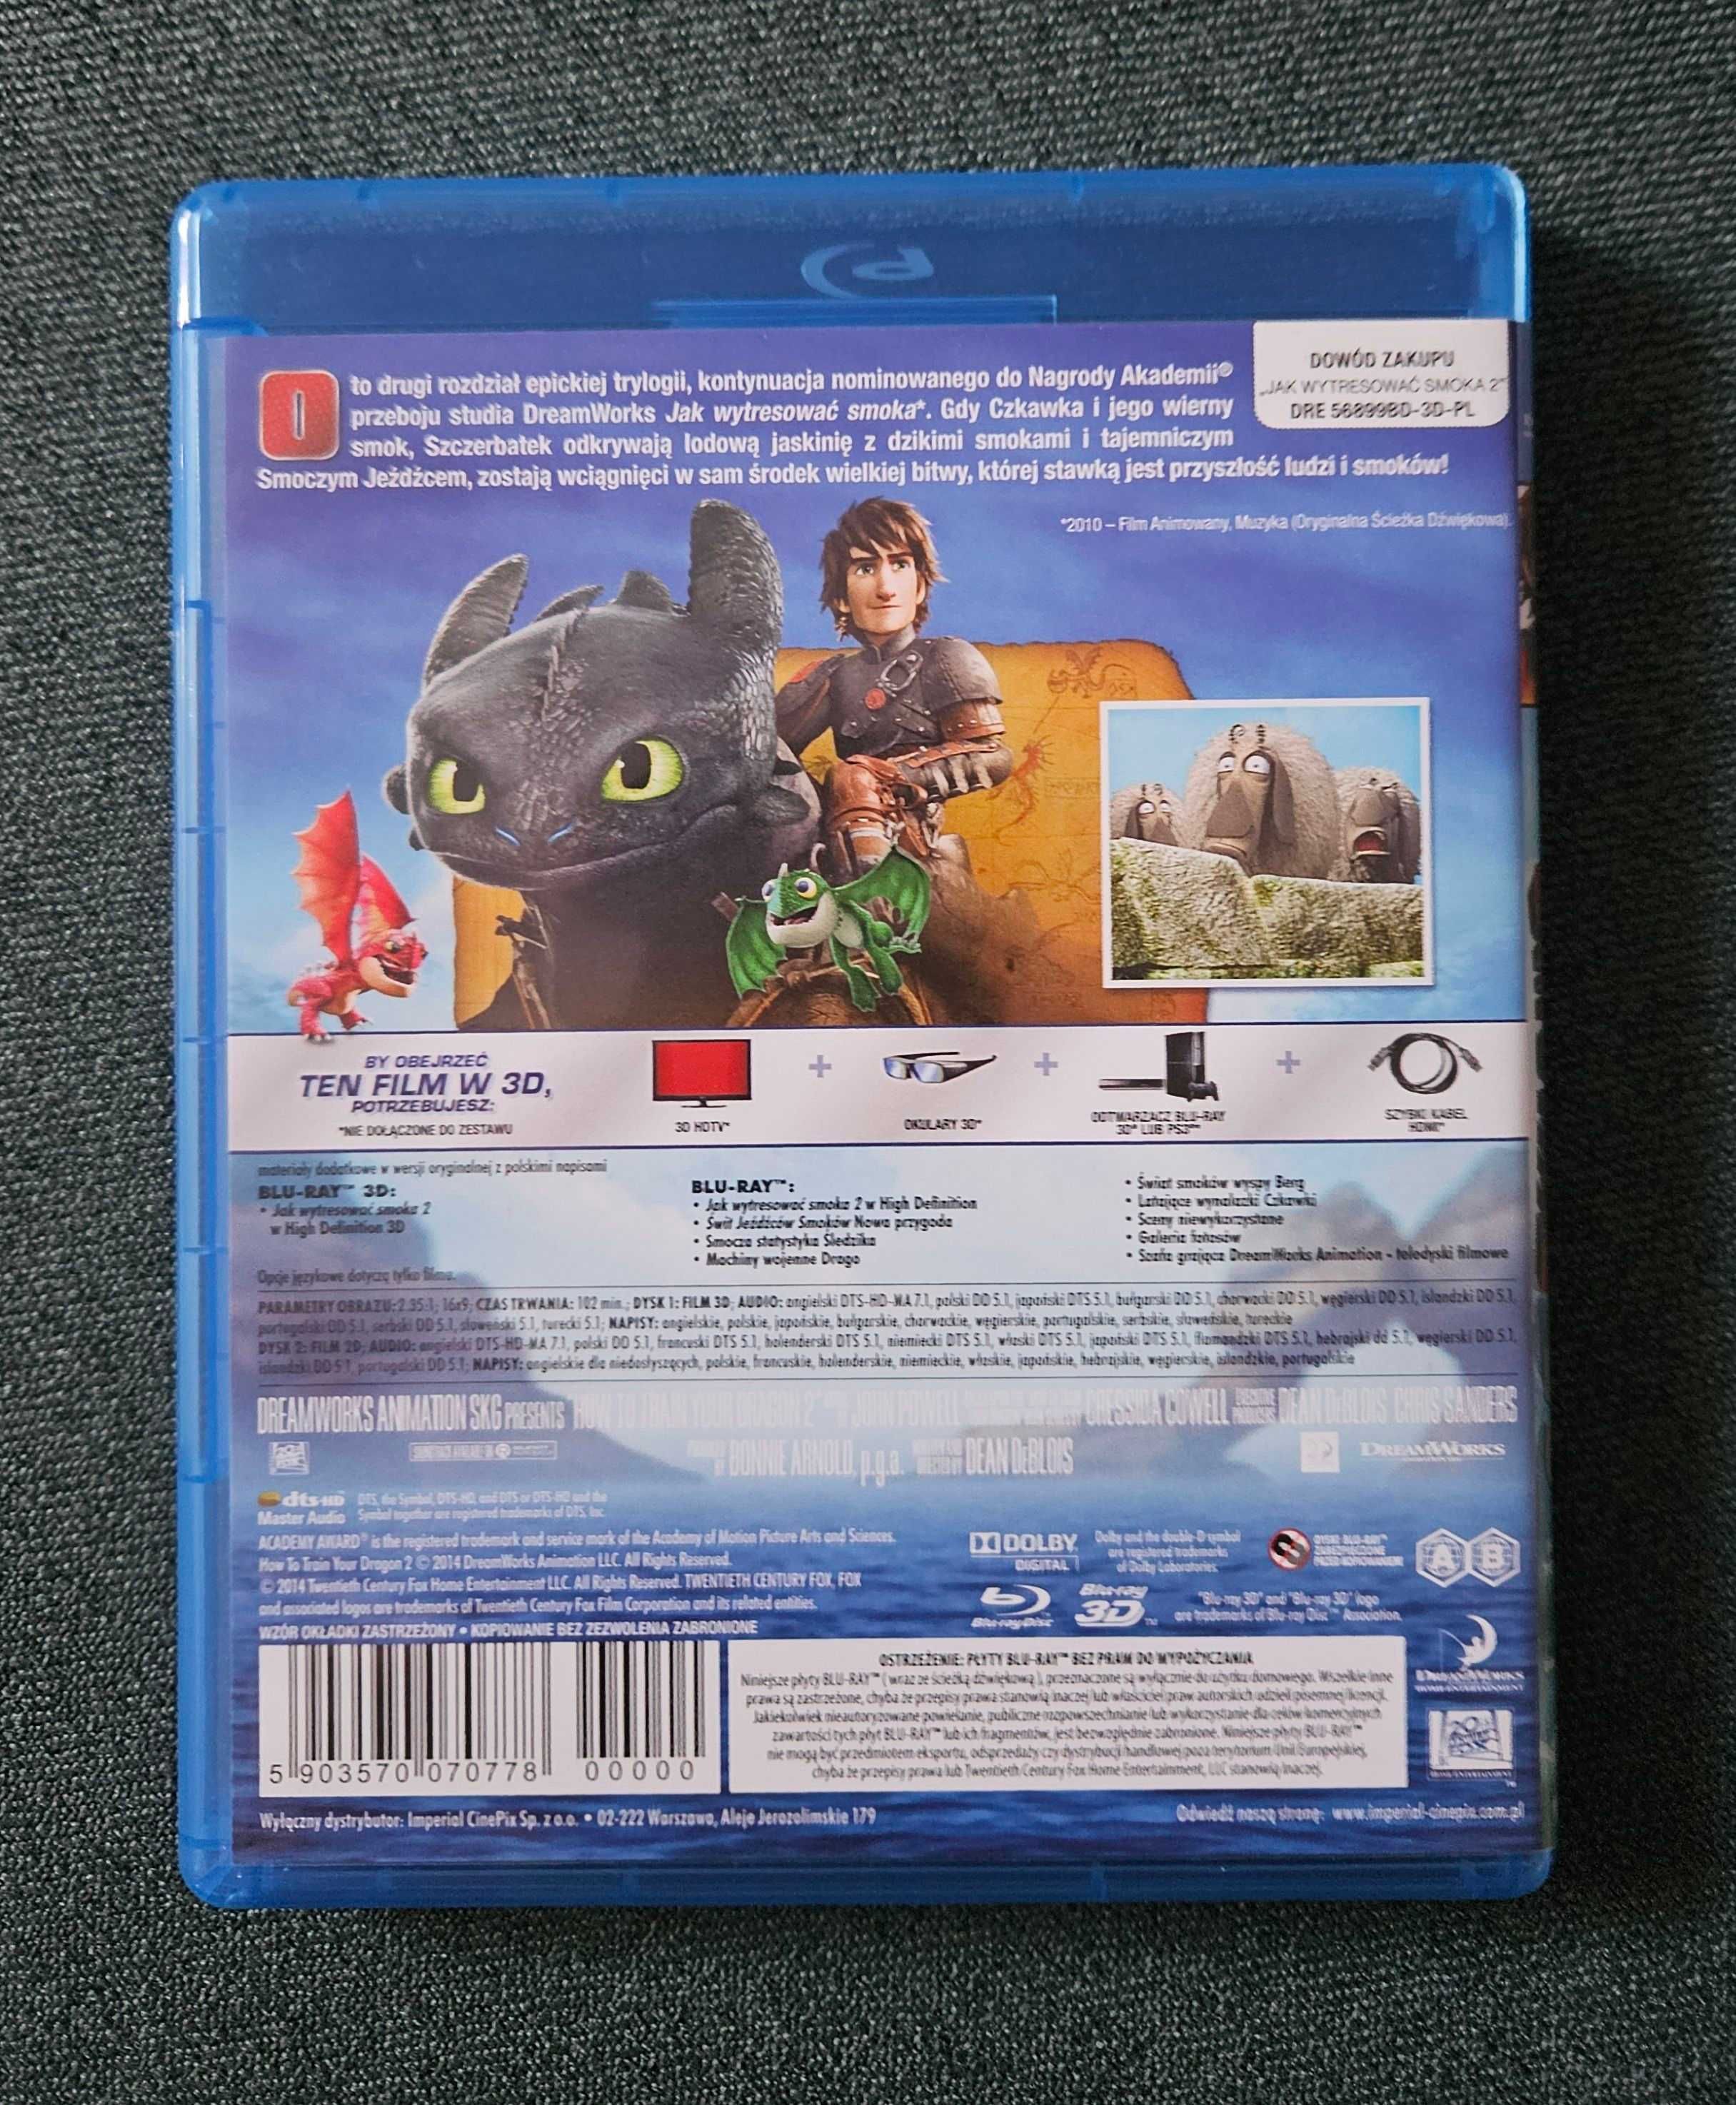 Jak wytresować smoka 2 - Blu-ray 3D - Wydanie PL